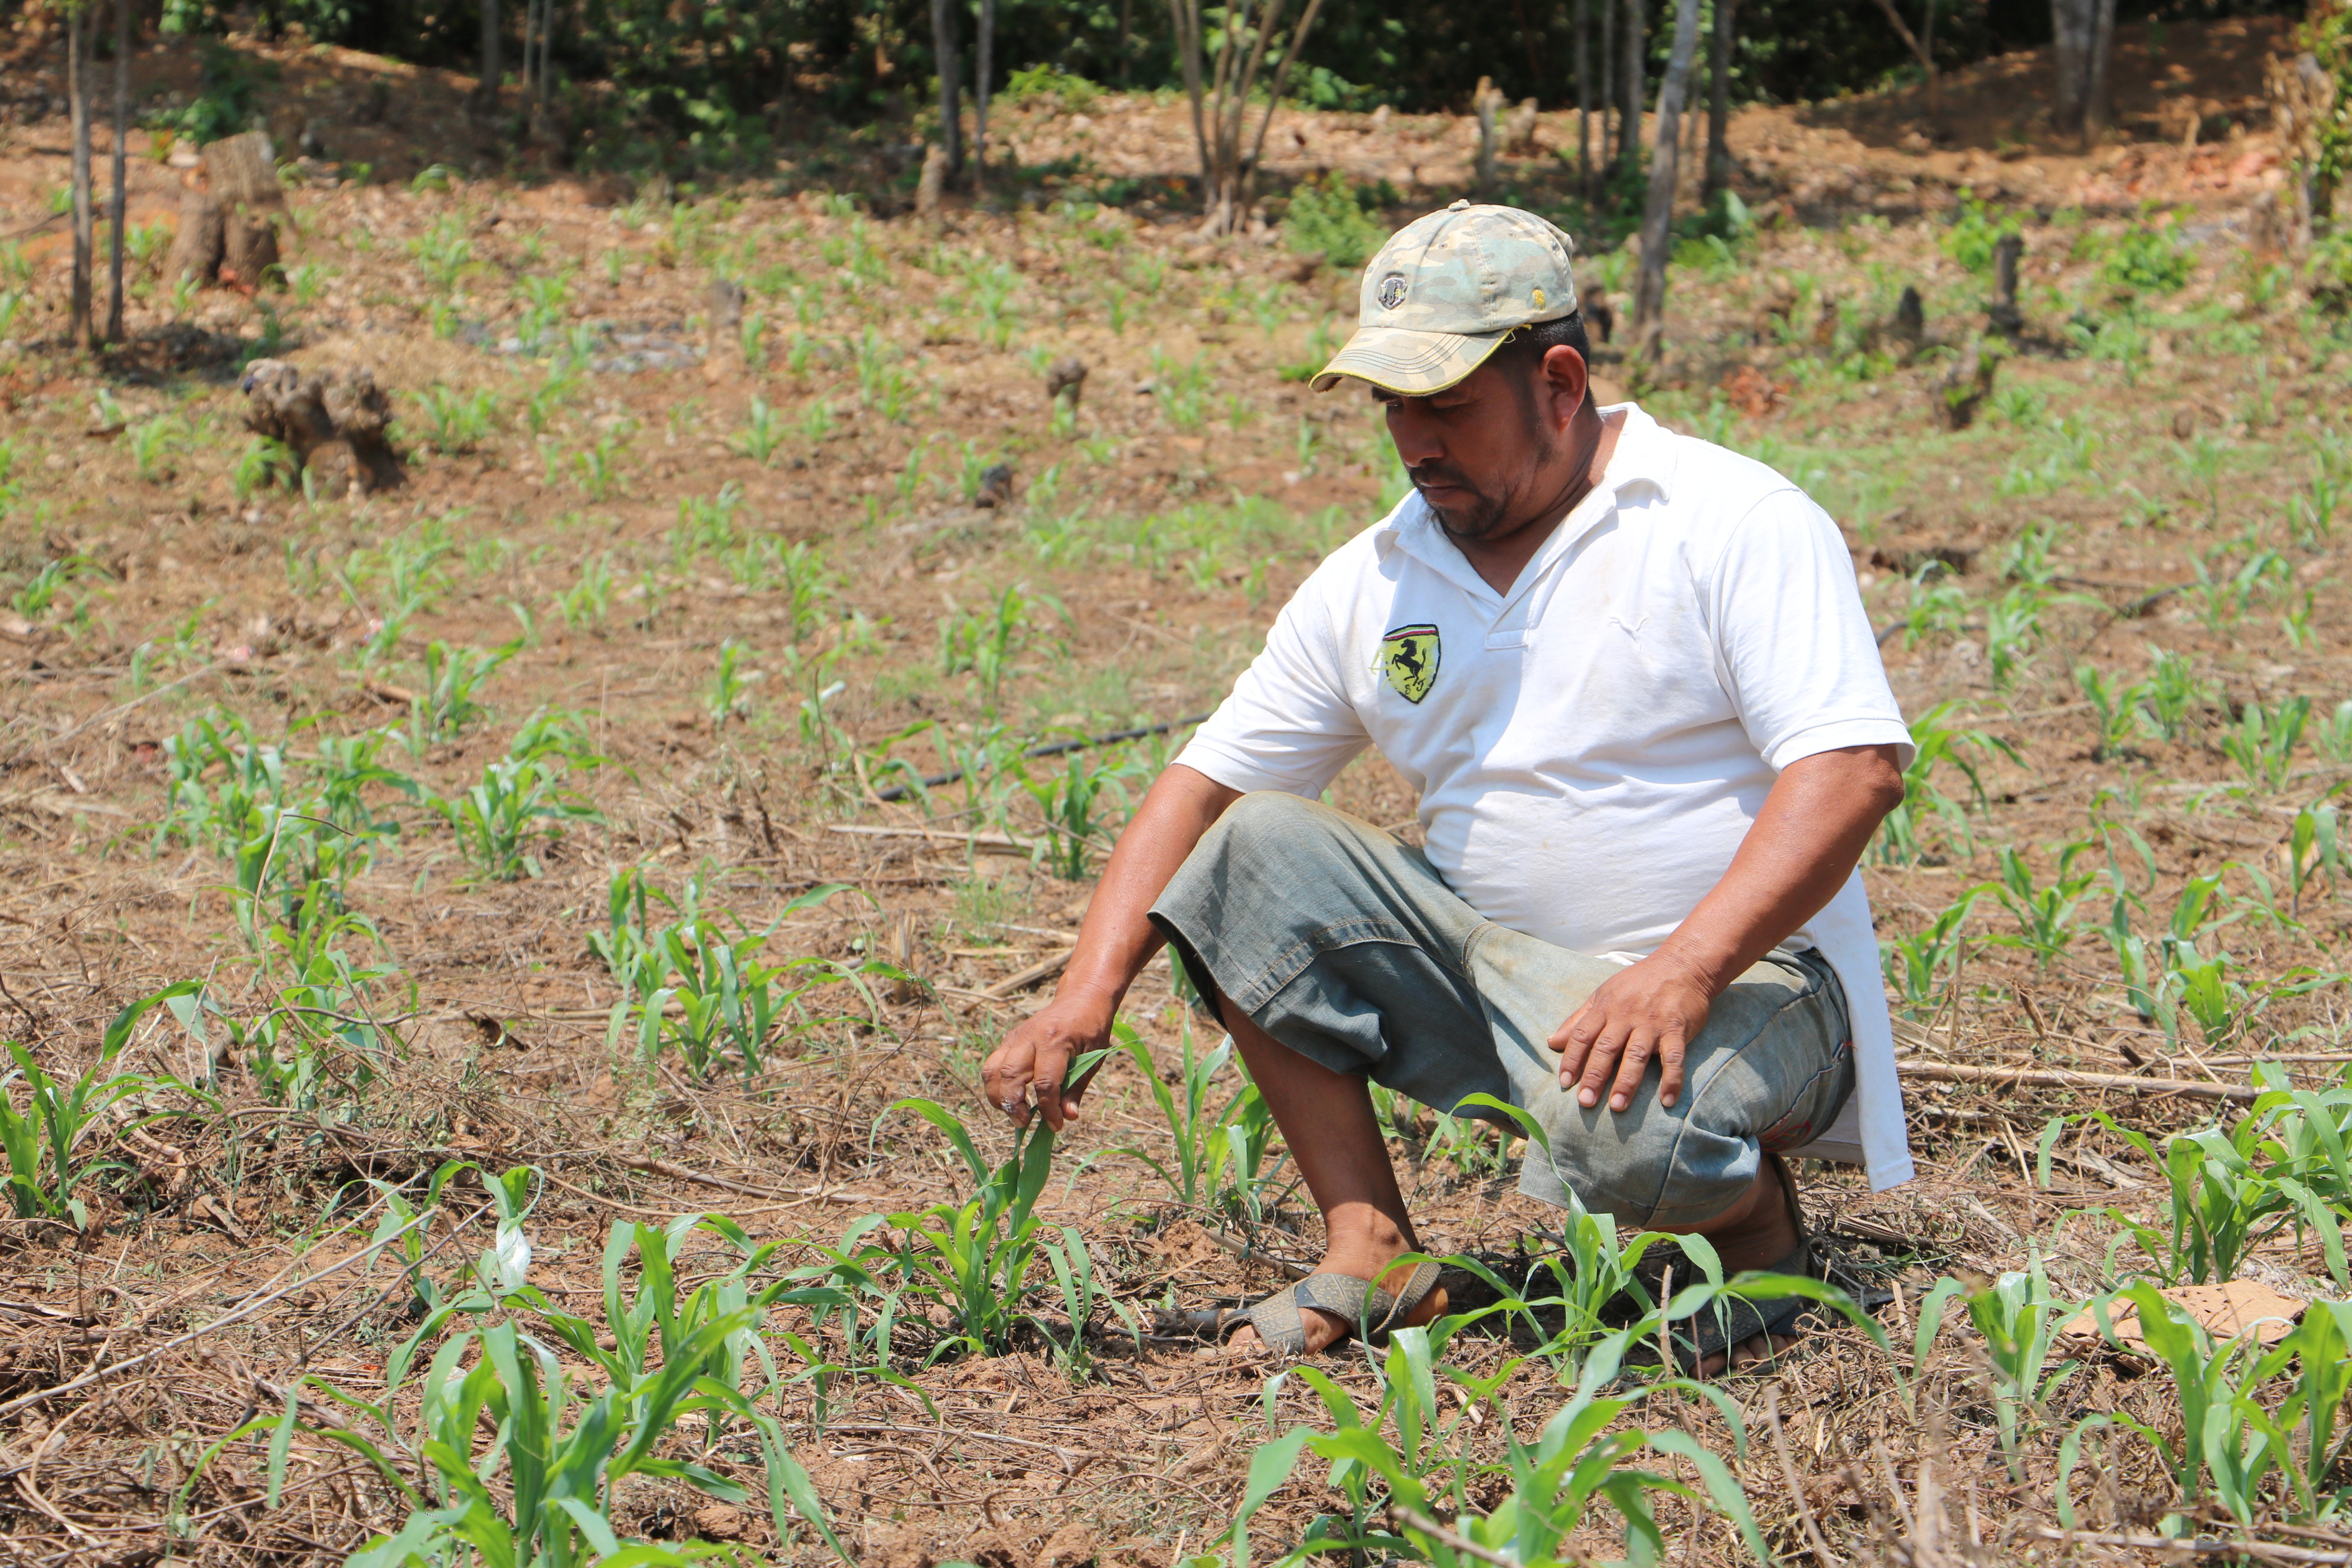 el programa, con 11 millones de pesos en 2020, contribuye a la autosuficiencia alimentaria y su población objetivo rebasa los dos millones de productores de granos, café y caña de azucar.